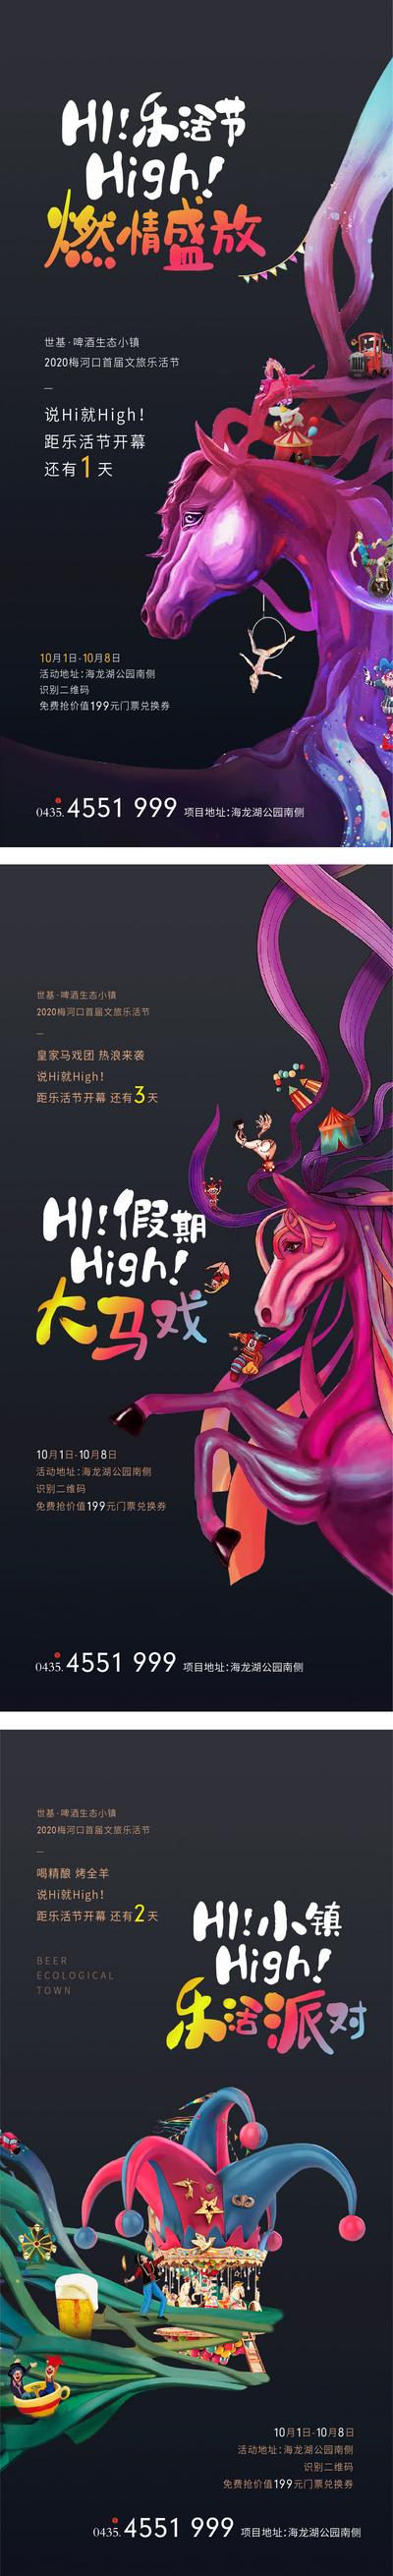 南门网 地产文化节海报